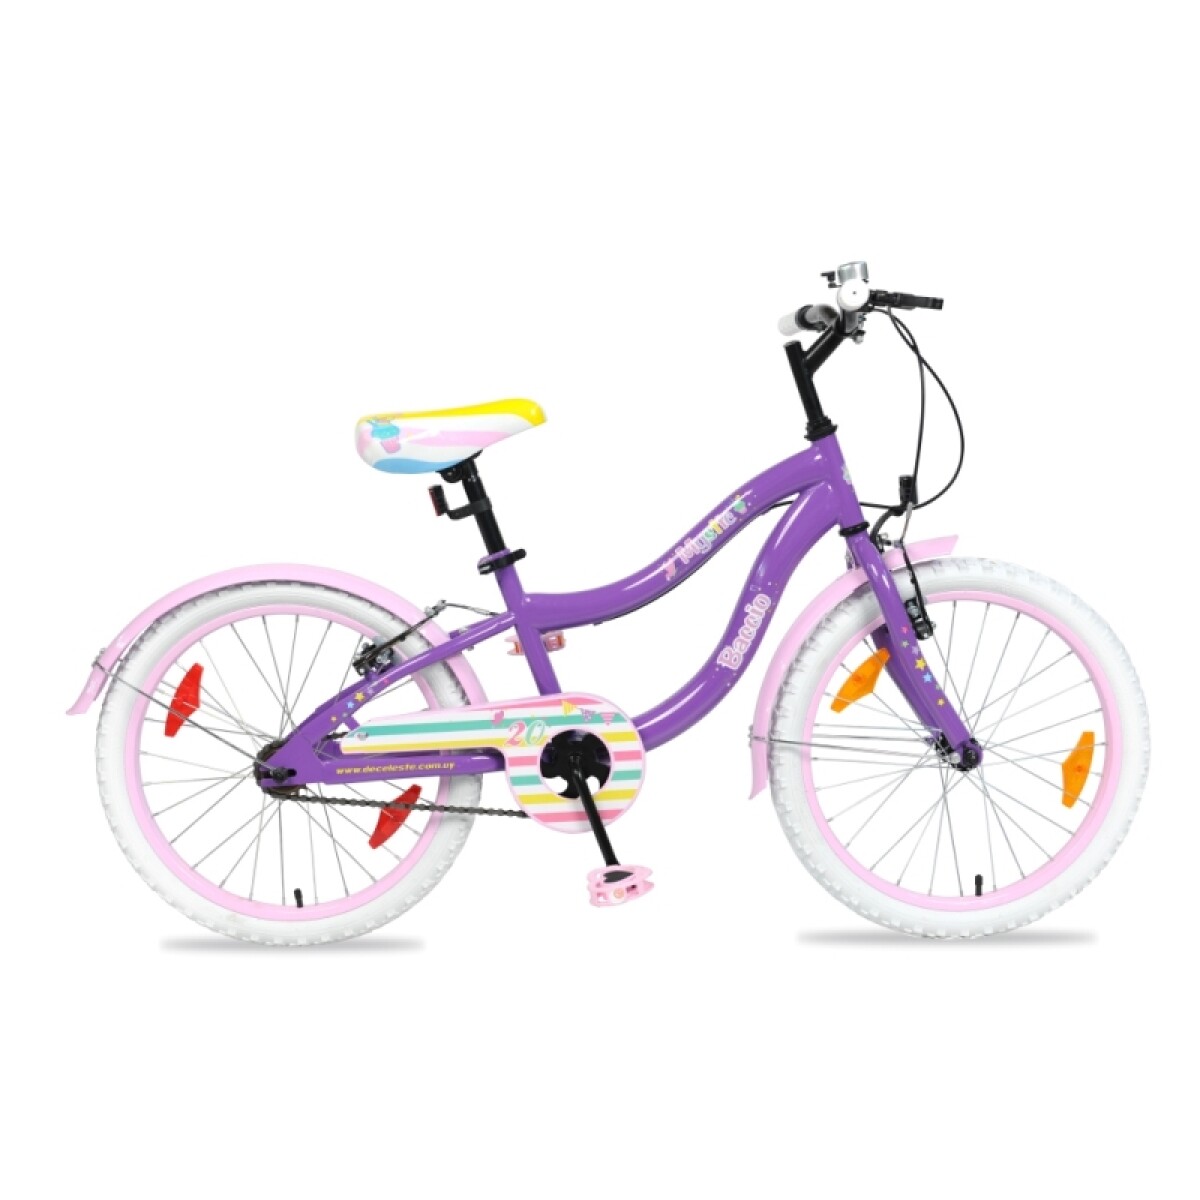 Bicicleta Baccio R.20 Niña Mystic (std) - Violeta/rosa 